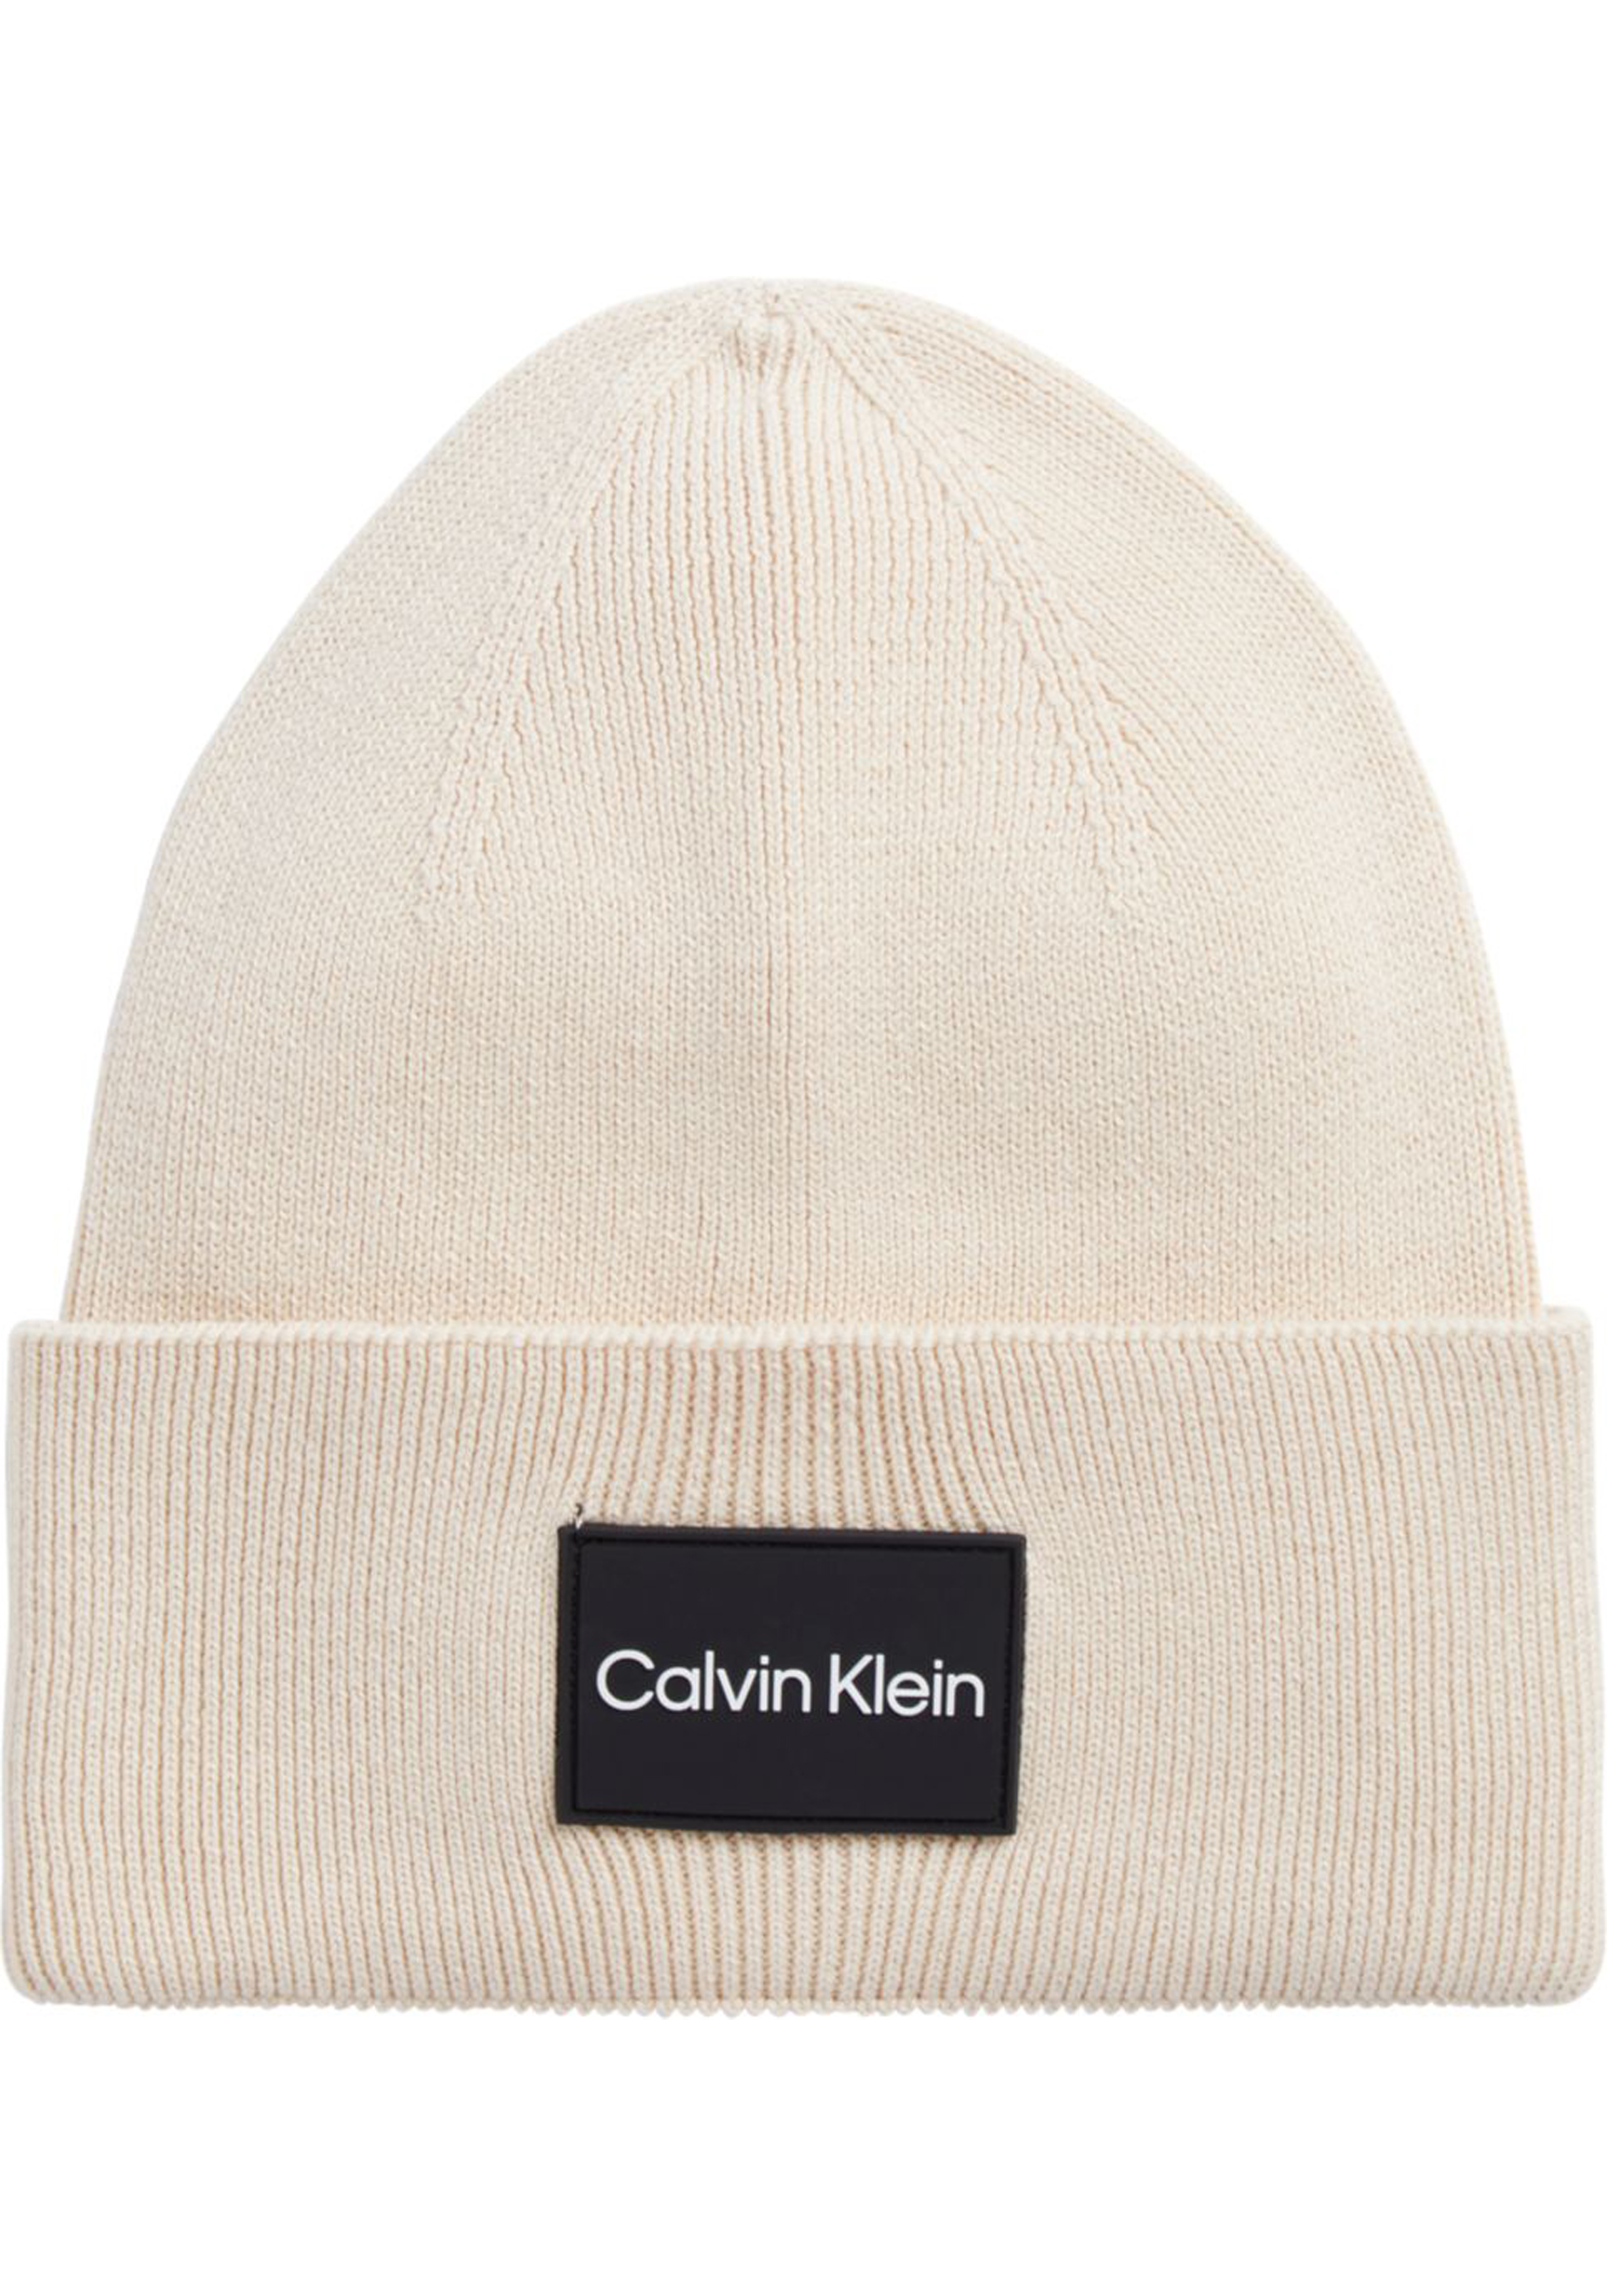 Calvin Klein muts, fine cotton rib beanie, beige